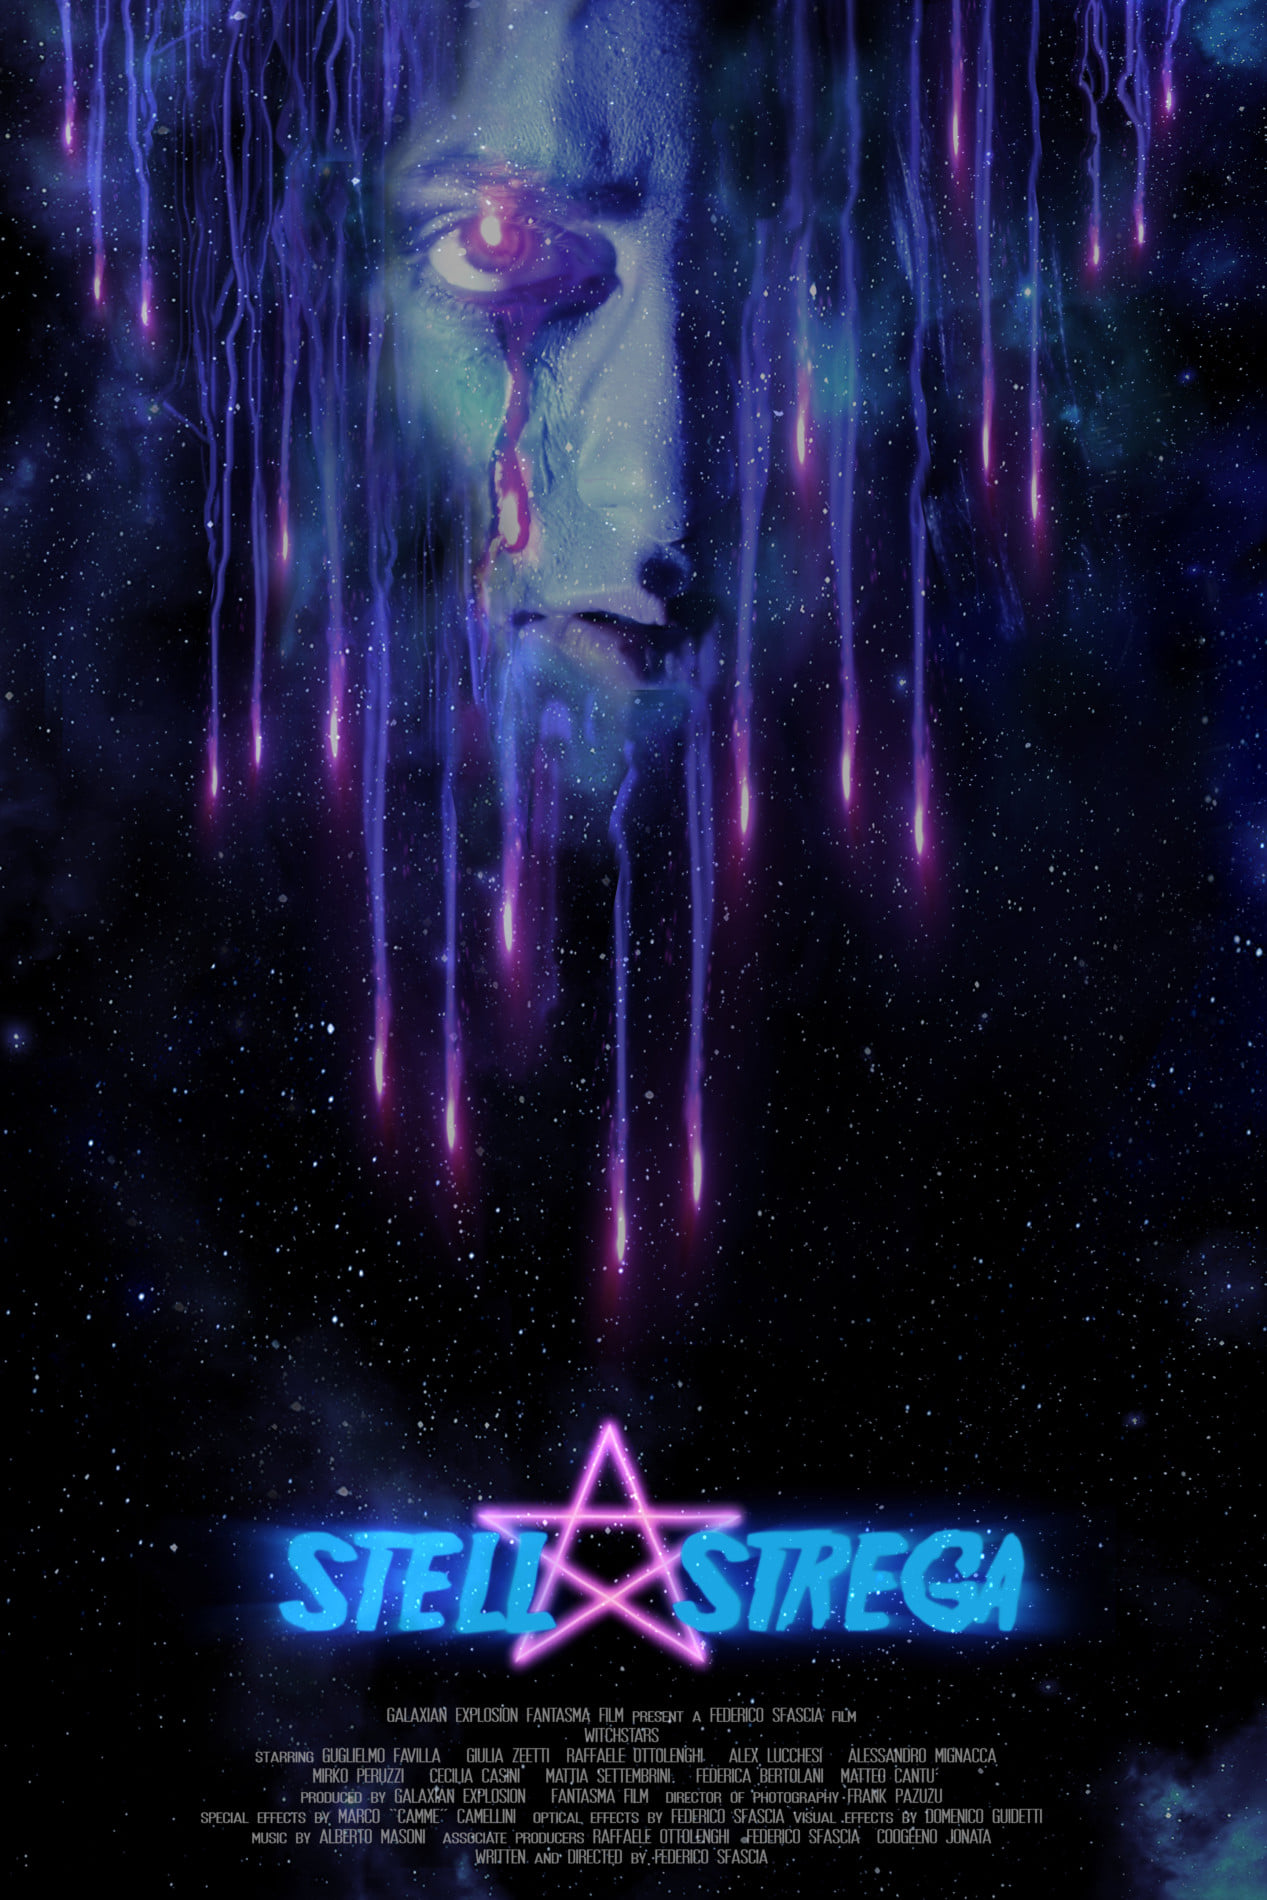 [NEWS] Stella Strega e I Rec U di Federico Sfascia in DVD